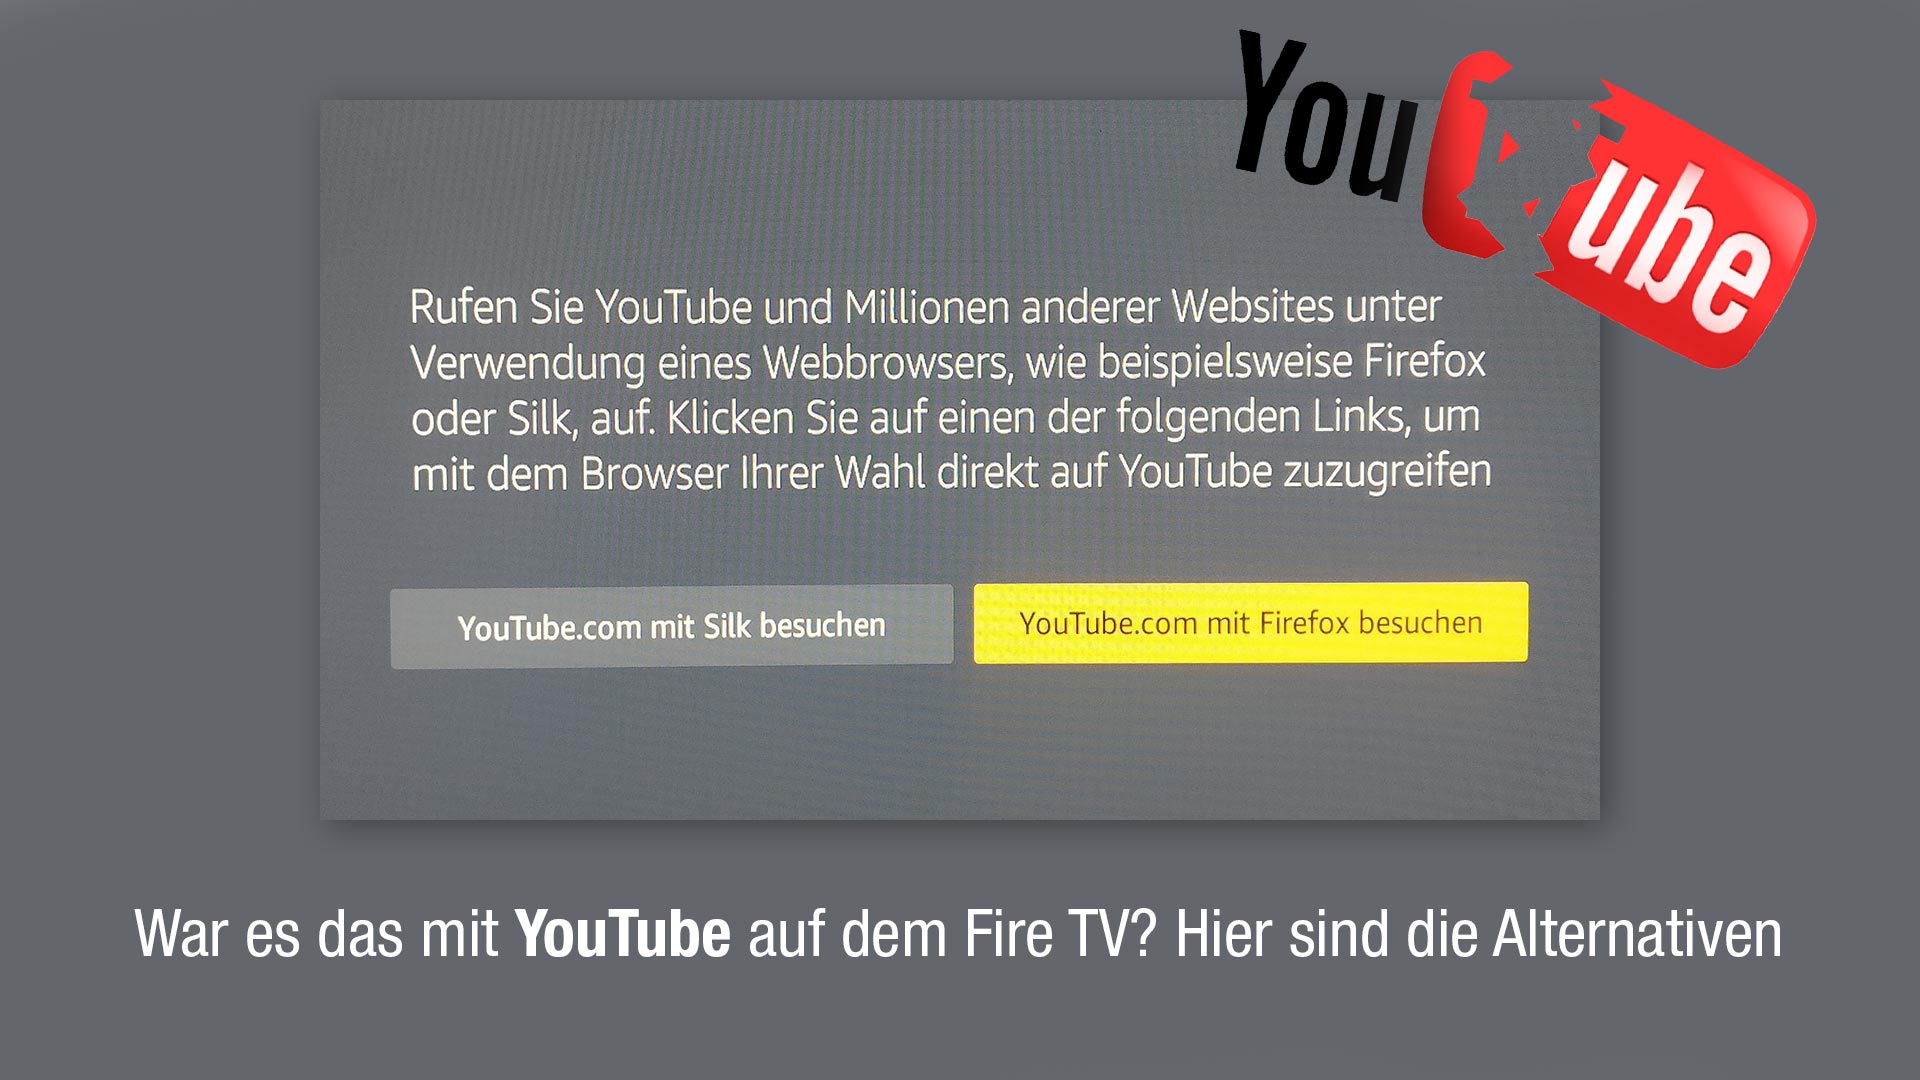 Warum funktioniert YouTube nicht auf meinem Firestick?
Wie kann ich das Problem beheben, wenn YouTube nicht auf meinem Firestick funktioniert?